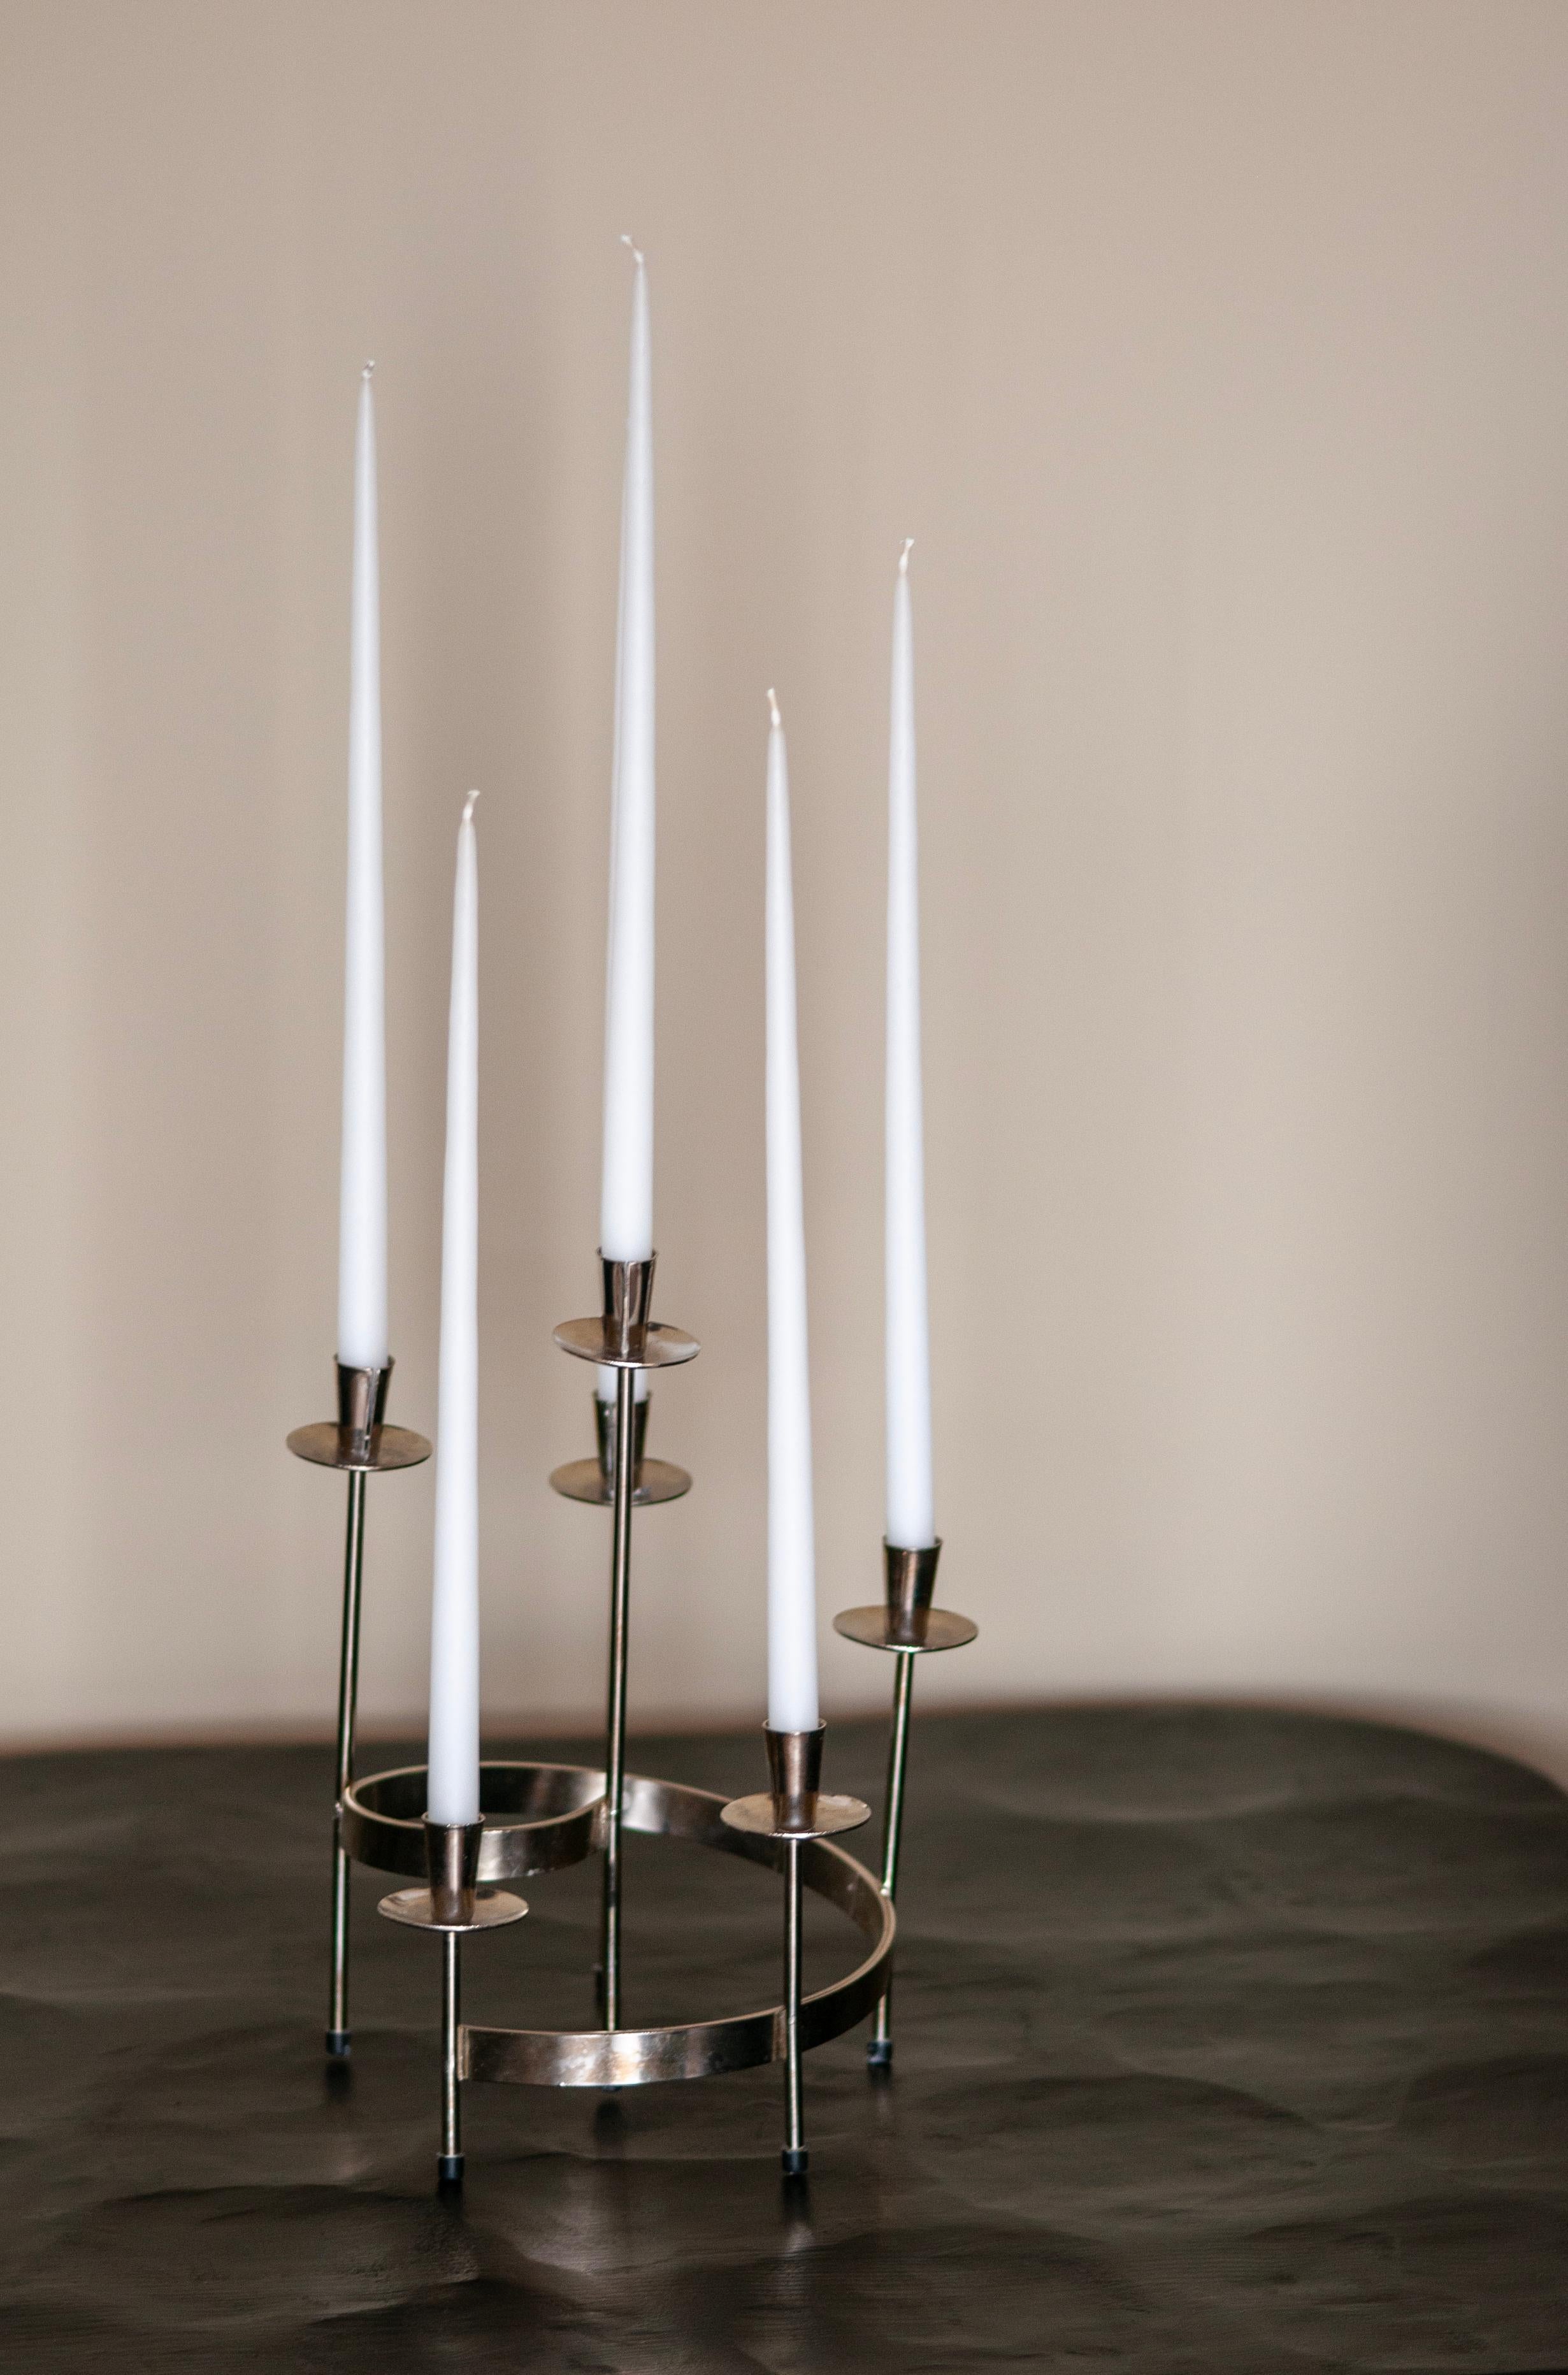 Voici un ravissant chandelier suédois rond, vintage et moderne du milieu du siècle, délicieusement fabriqué à la main en métal blanc. Cette pièce élégante a été conçue par le célèbre Gunnar Eleg et fabriquée avec talent par Ystad-Metall, ce qui